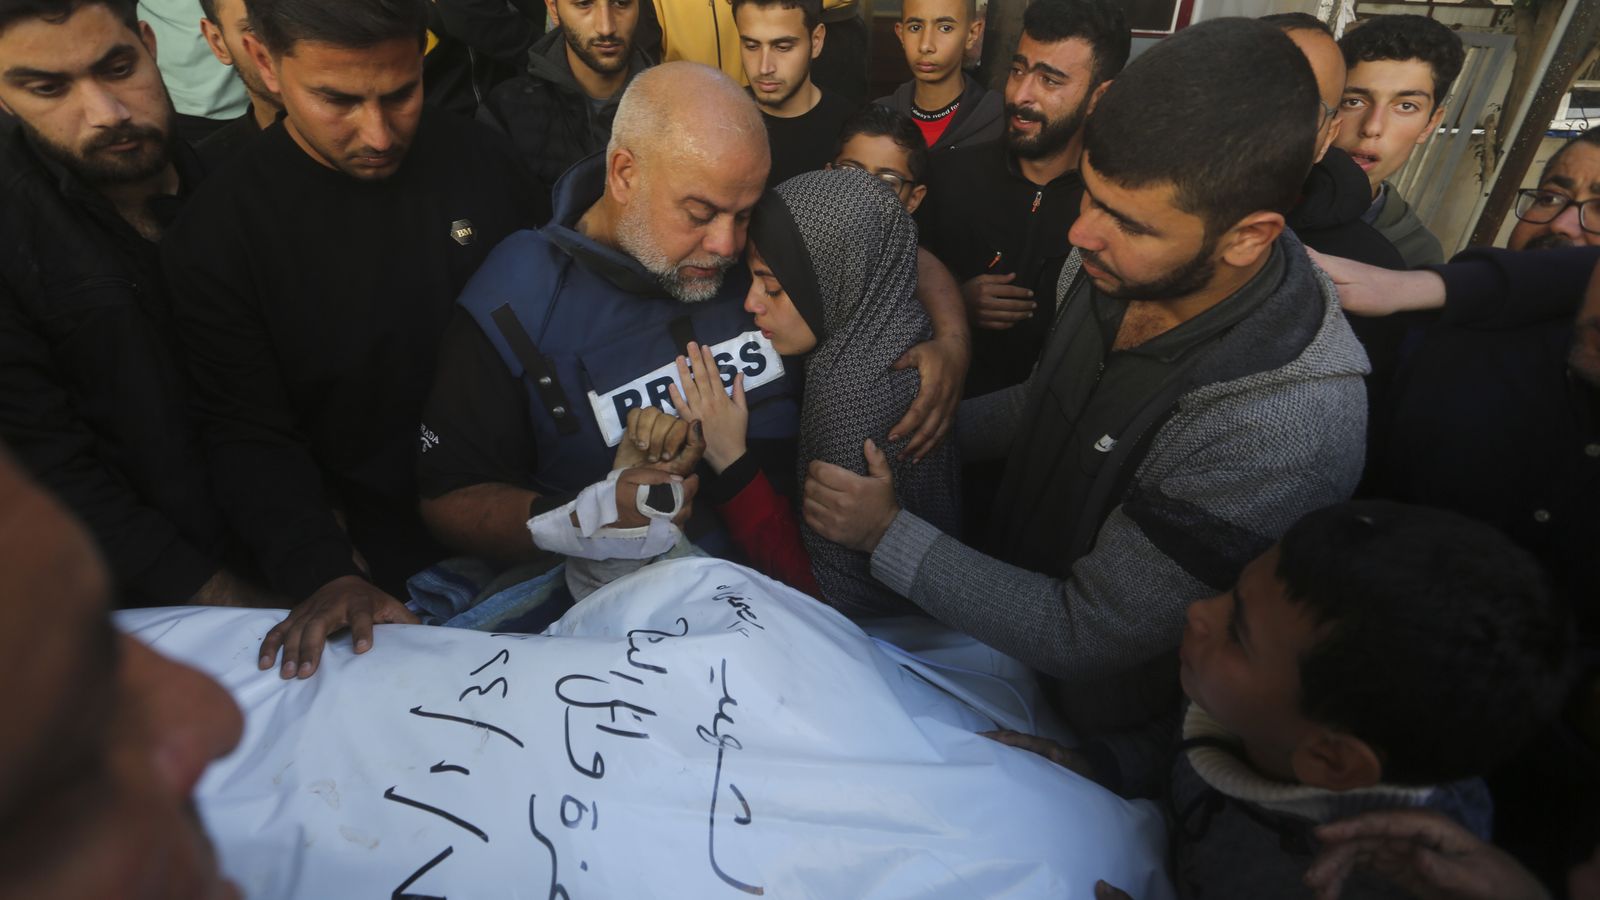 Israel gibt zu, bei einem Streik gezielt Journalisten angegriffen zu haben, bei denen der Sohn des Chefs des Al-Jazeera-Büros getötet wurde